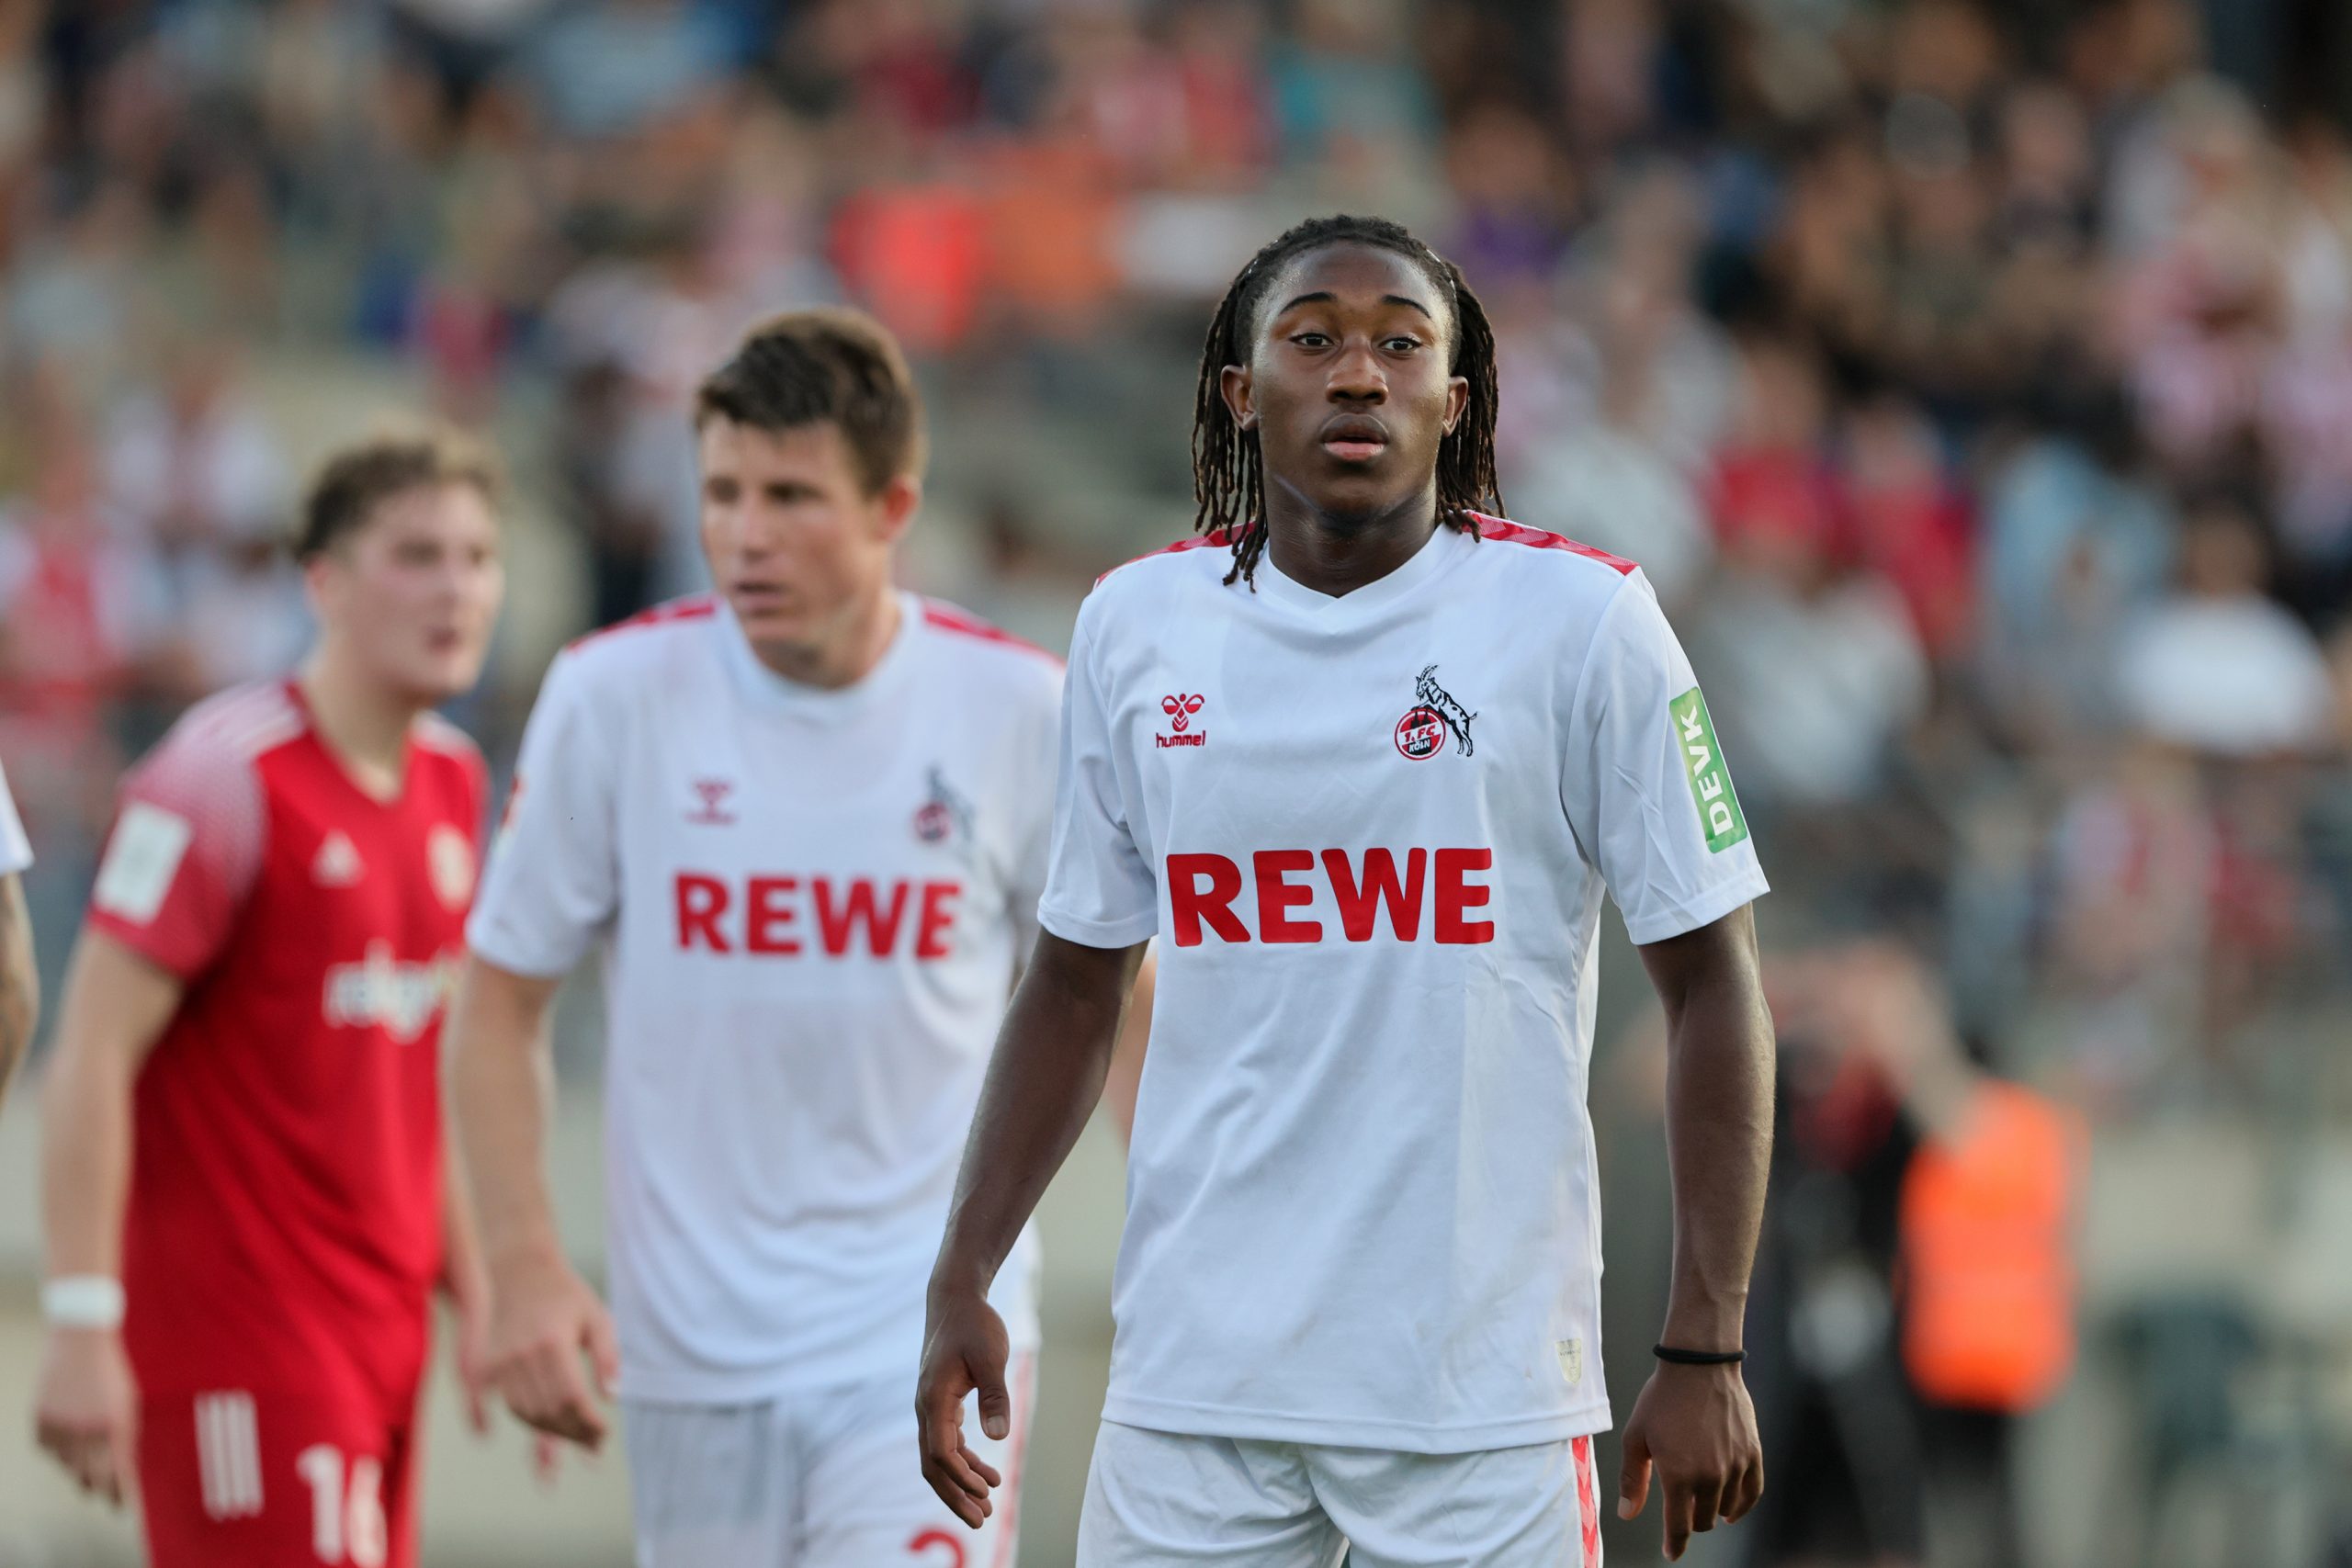 Joao Pinto spielt in Bergisch Gladbach erstmals für die Profis des 1. FC Köln. (Foto: Bucco)